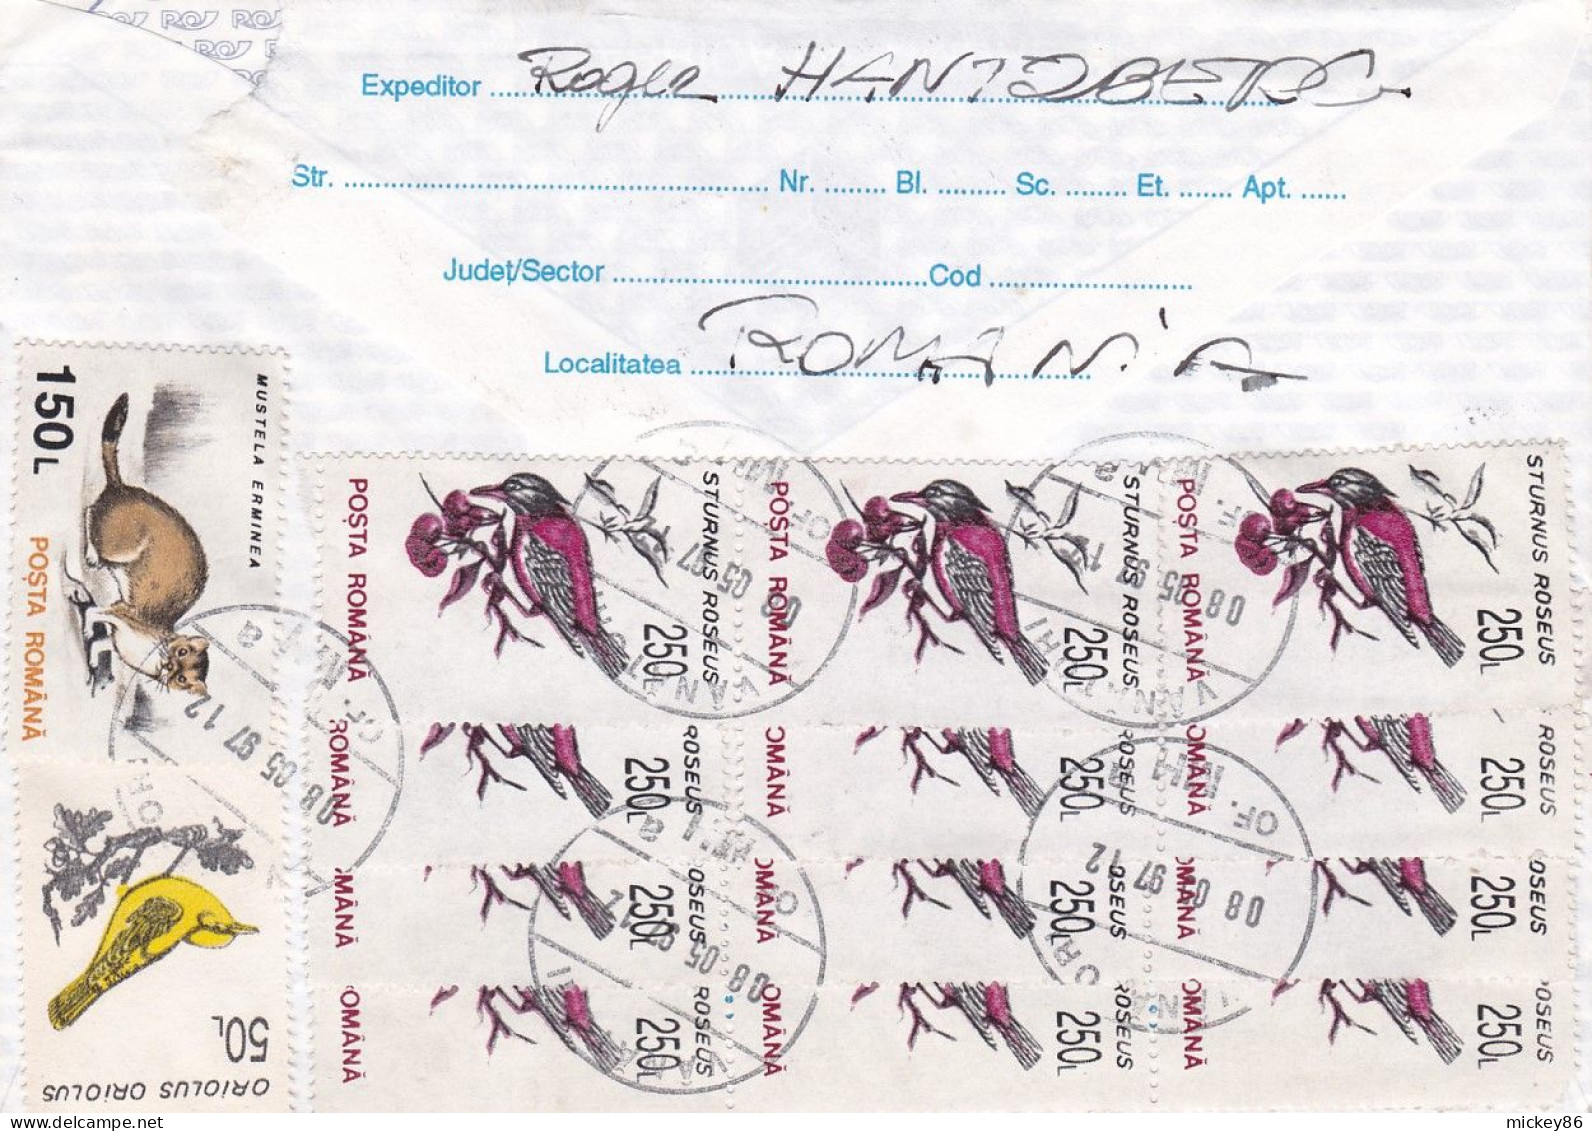 Roumanie--1997--entier NORWEX 97 De VANATORI Pour NANTES-44 (France)-timbres Oiseaux,hermine  Au Verso - Storia Postale